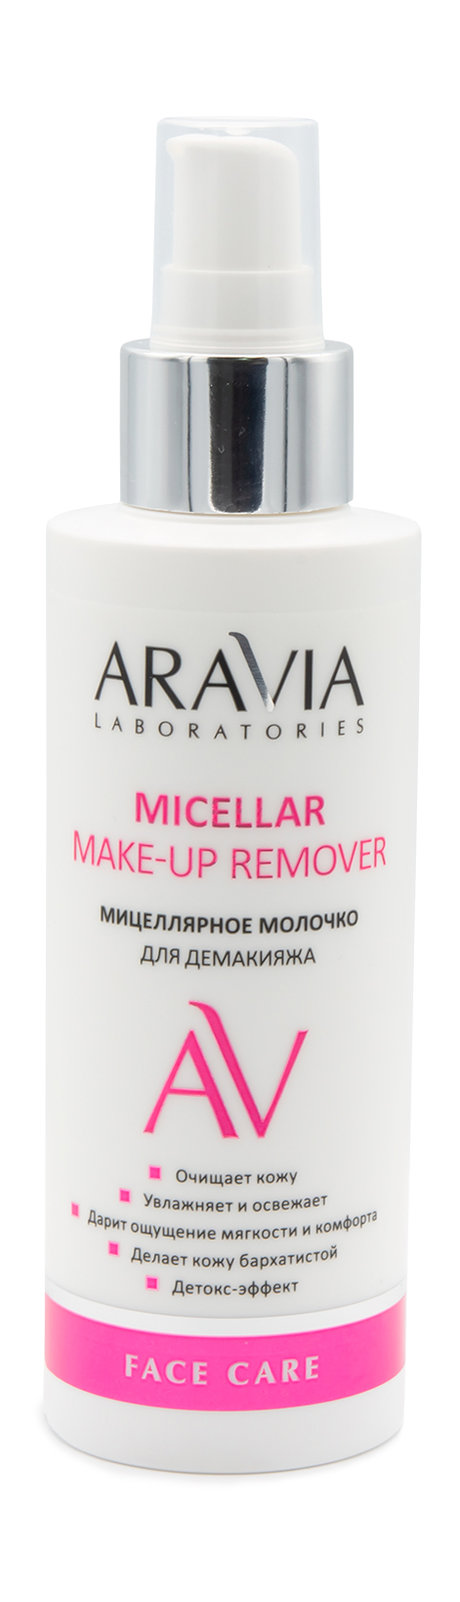 aravia laboratories micellar make-up remover